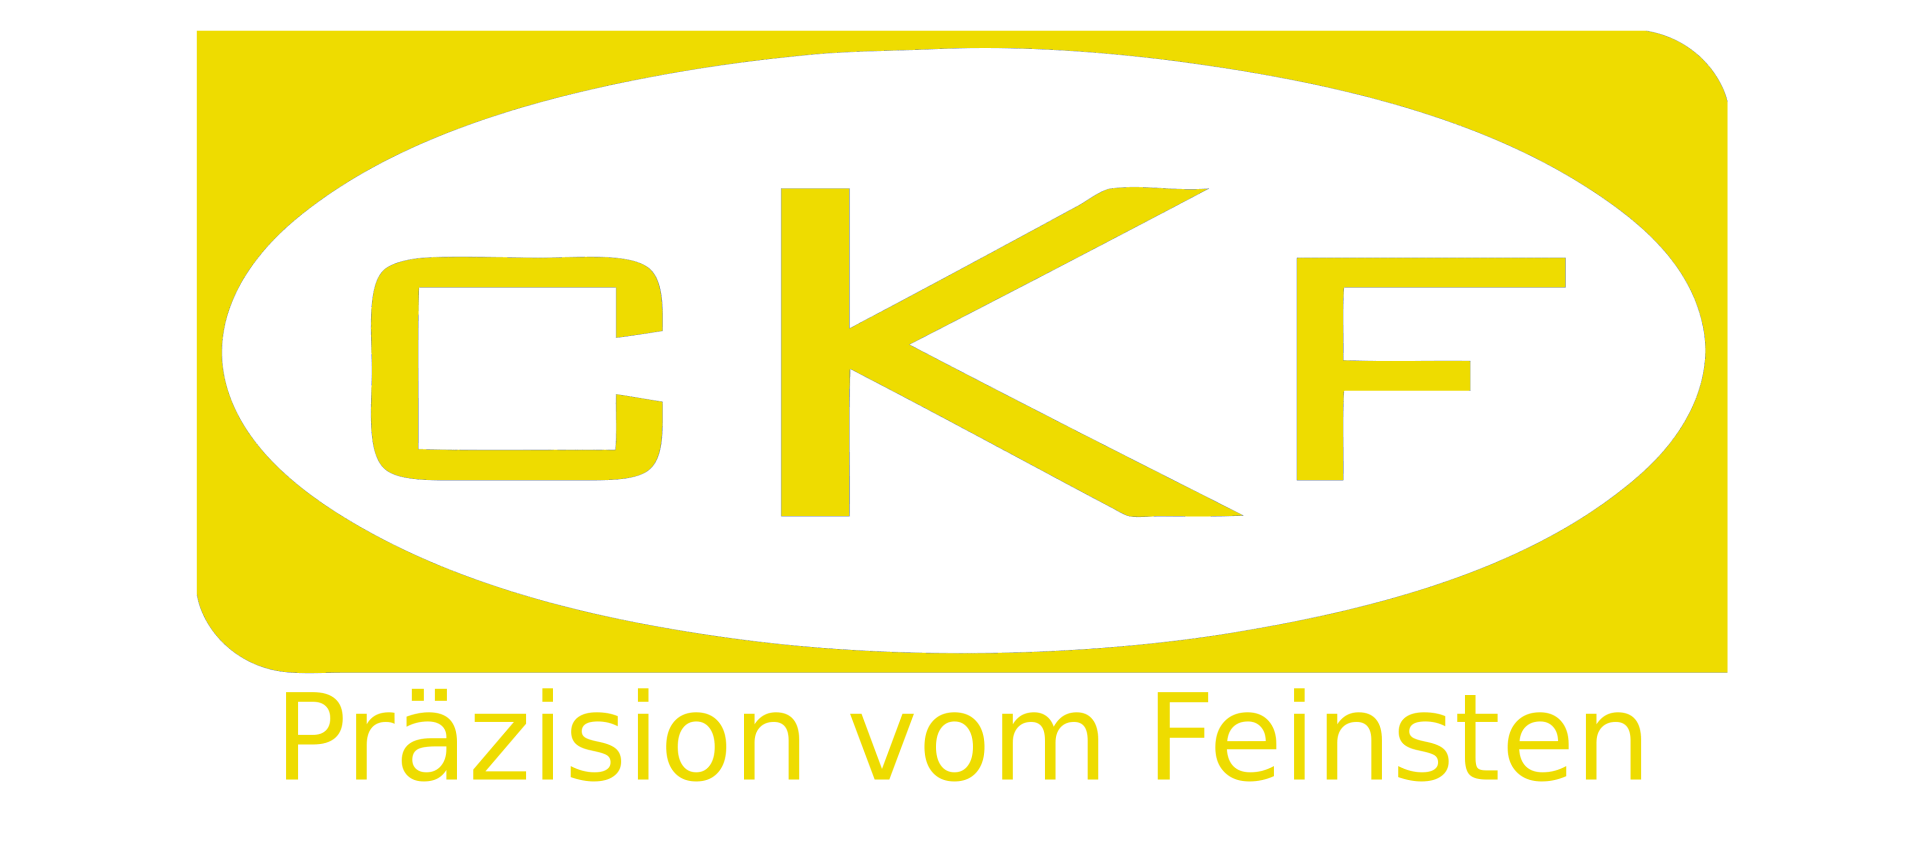 (c) Ckf-fraestechnik.de